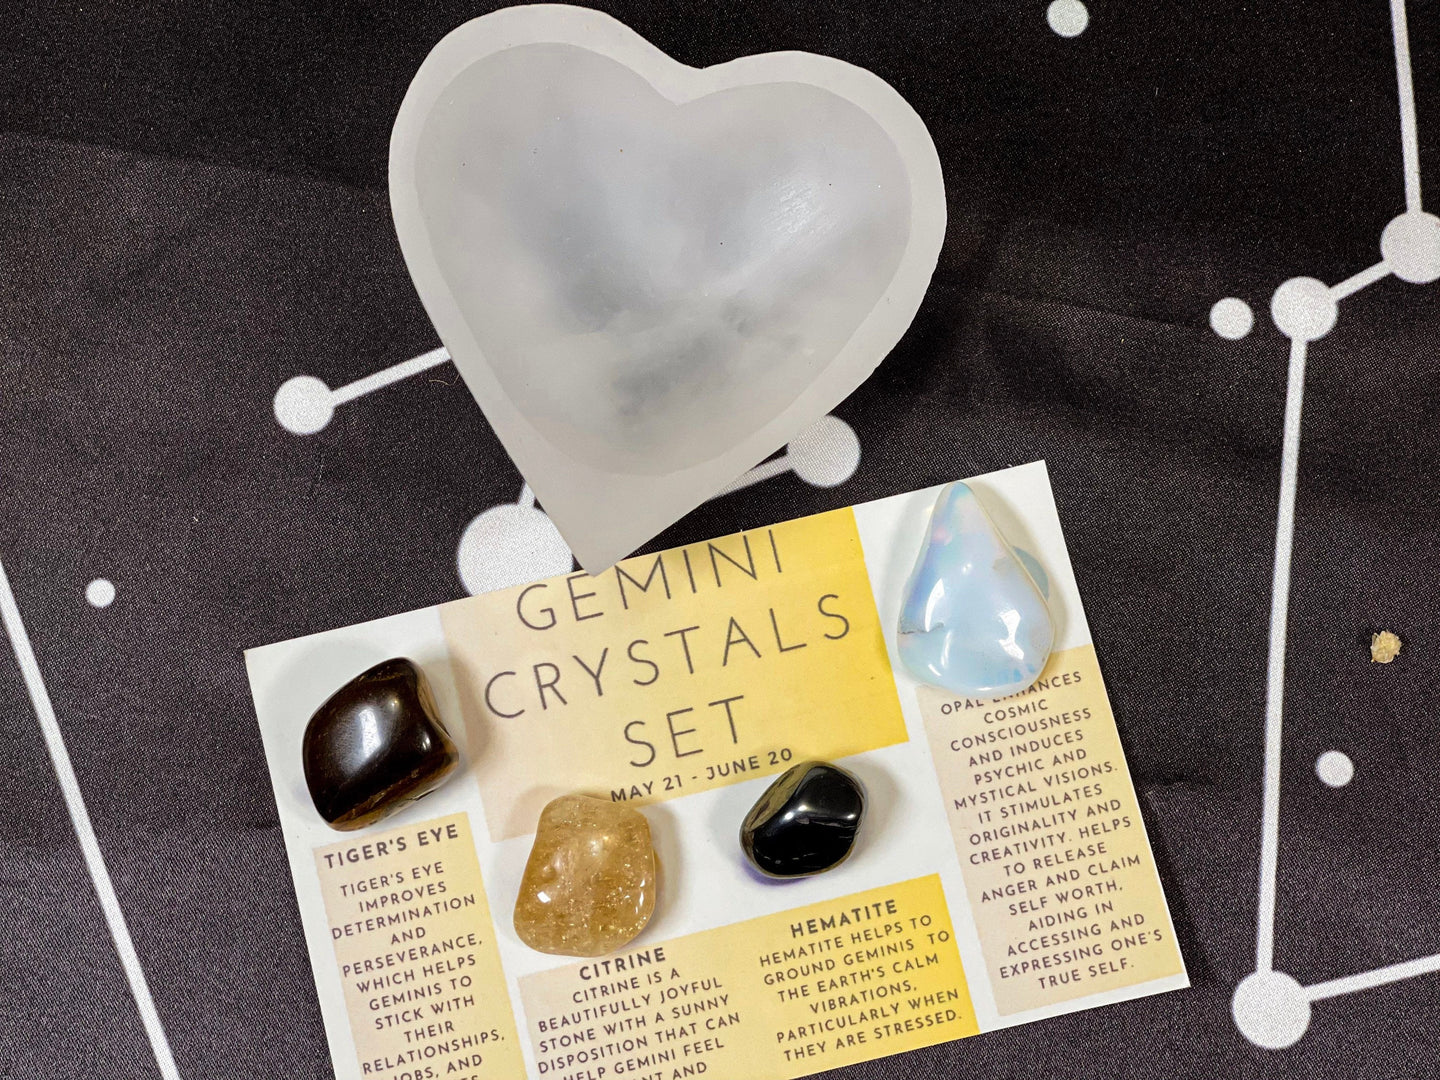 Gemini Crystals, Gemini Crystal Set, Gemini Crystal Box, Crystals for Gemini, Gemini Set, Birthstones Gemini, Gemini Stones